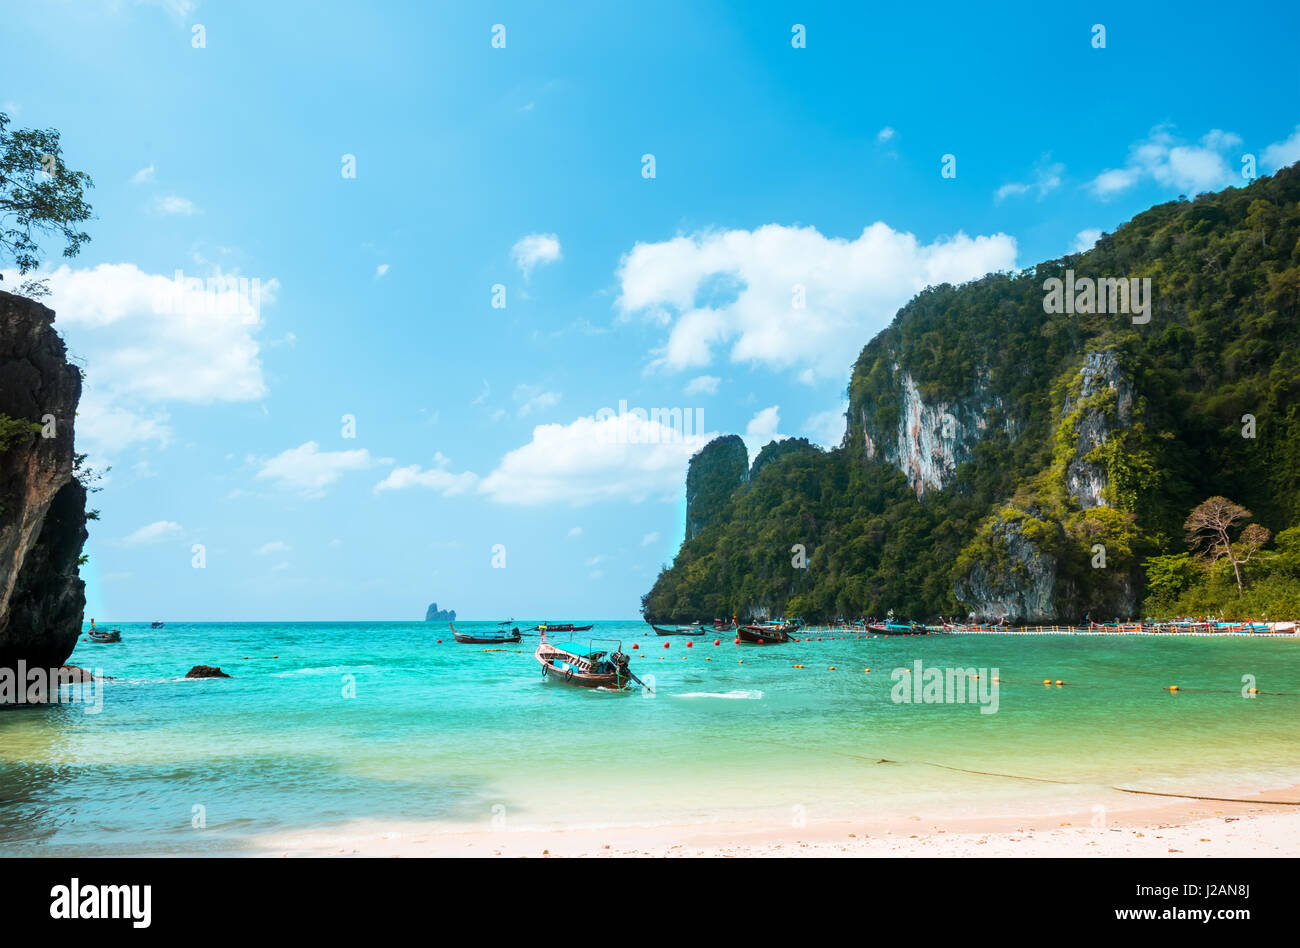 Koh Hong island bay, Andaman Sea - Thailand Stock Photo